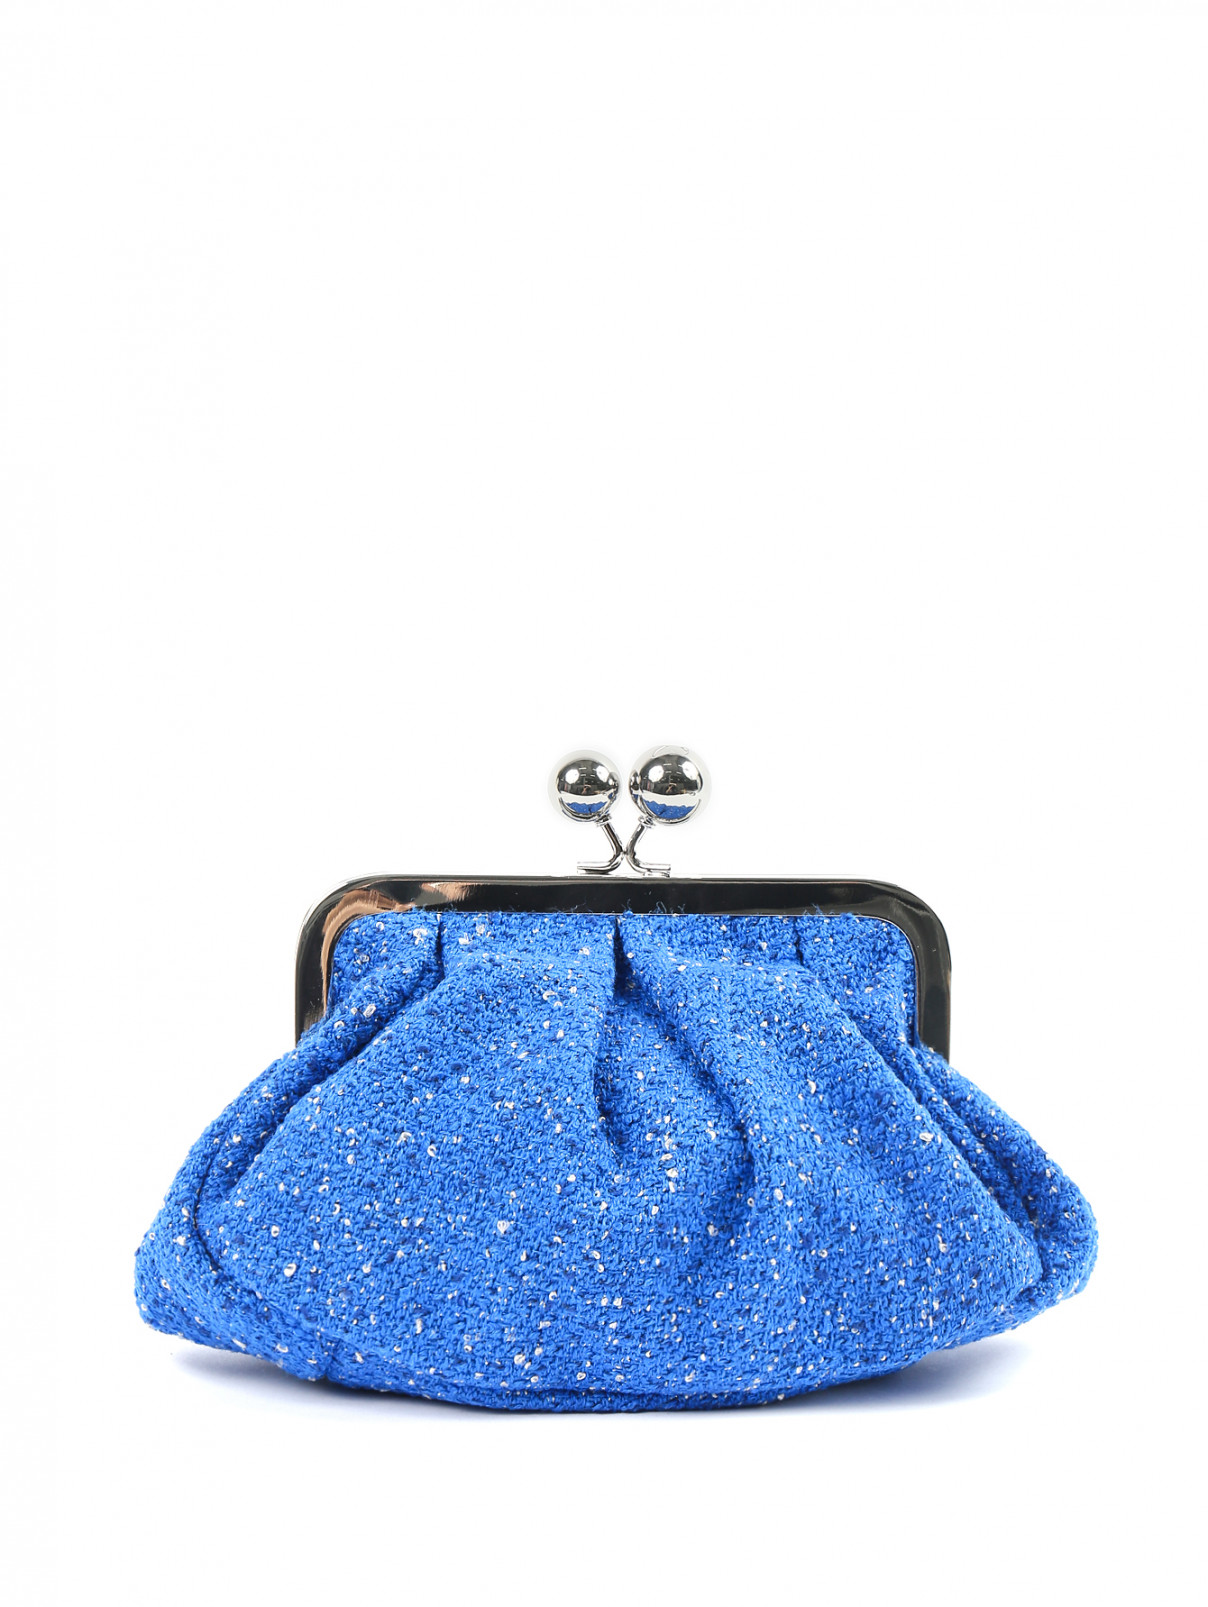 Объемный клатч из текстиля на съемном плечевом ремне Weekend Max Mara  –  Общий вид  – Цвет:  Синий